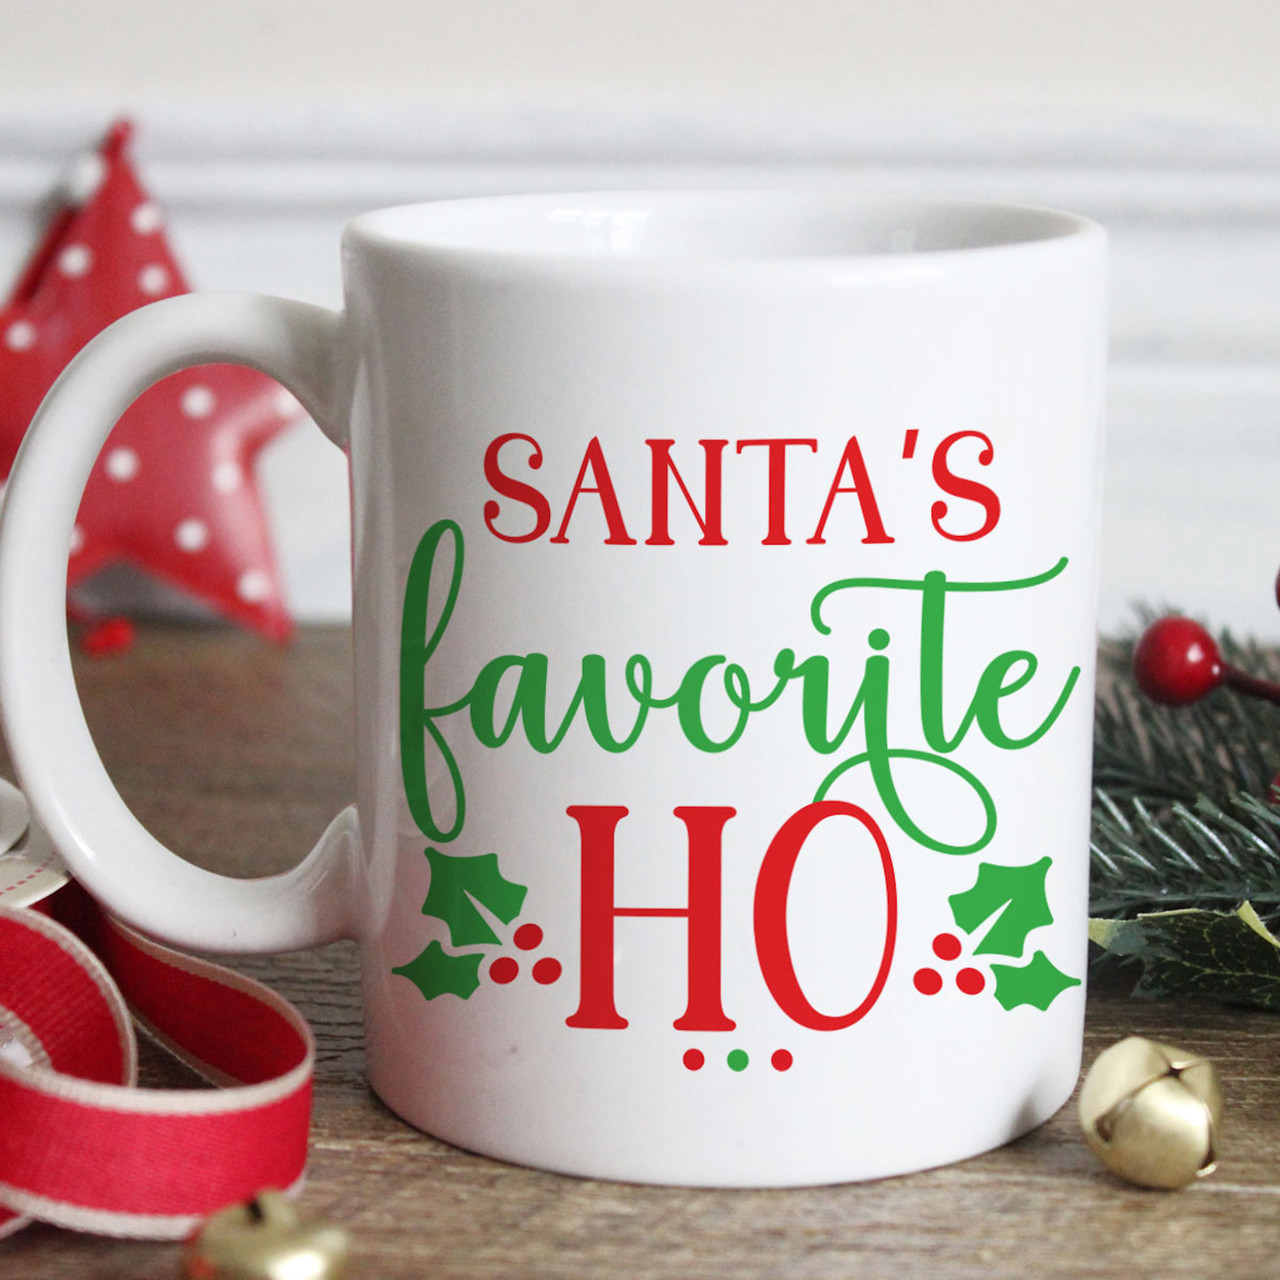 Santa's Favorite Ho Coffee Mug Holiday Gifts Naughty Christmas